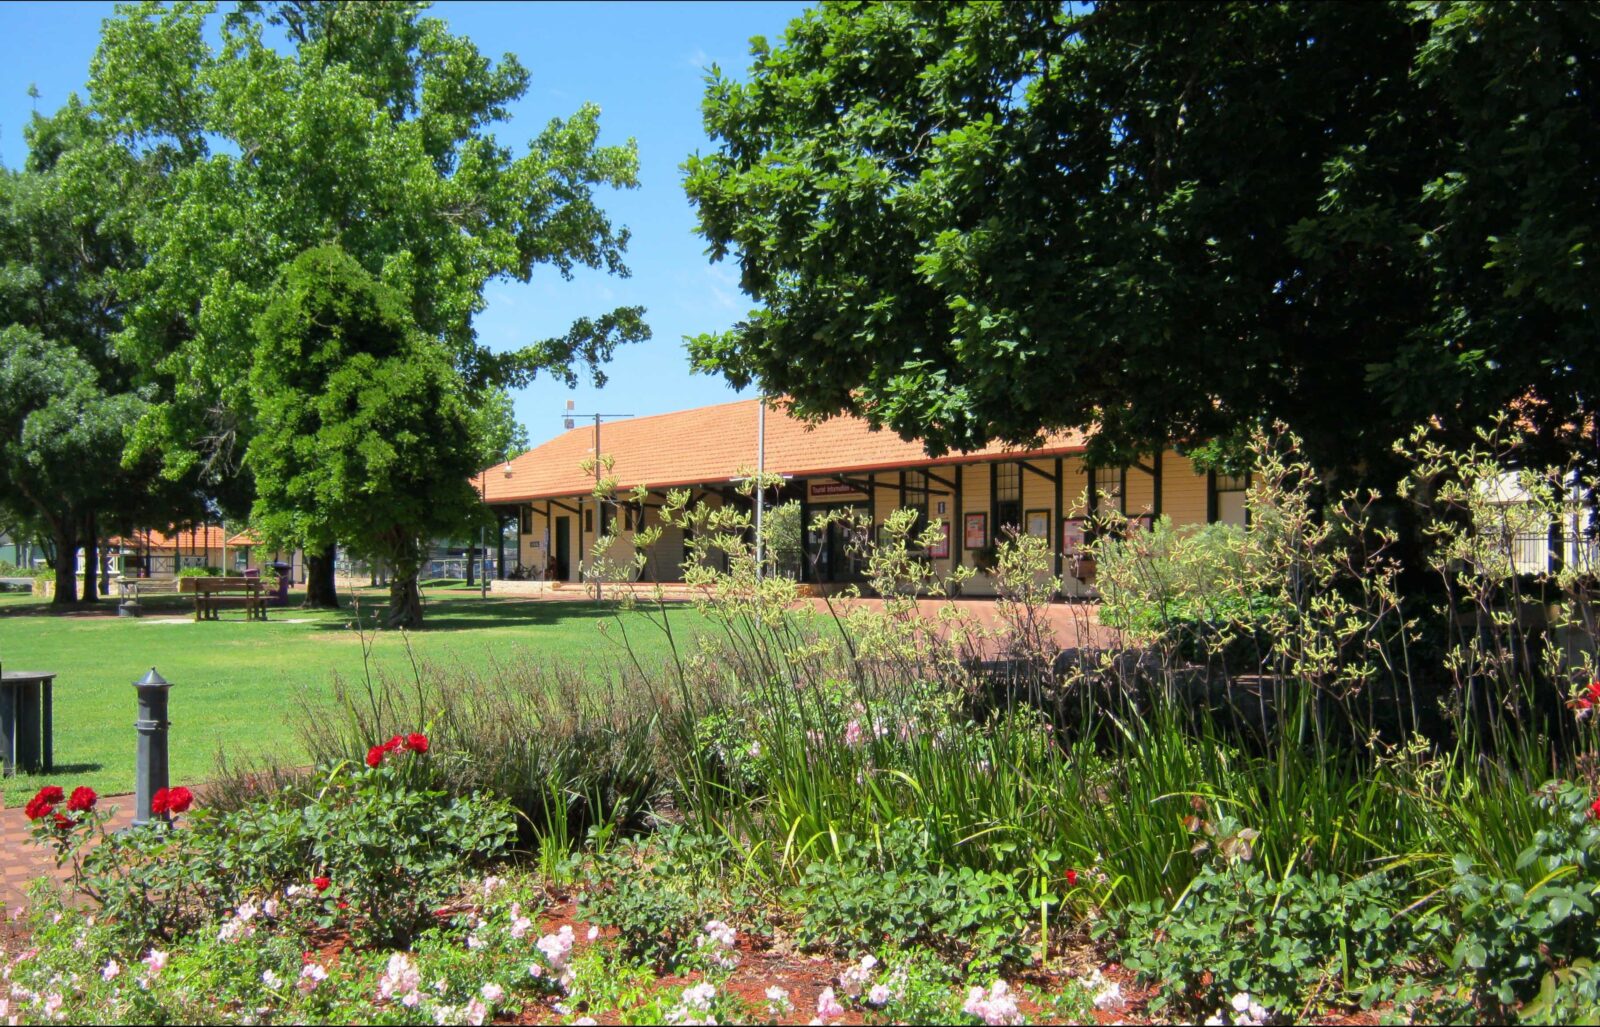 Donnybrook Visitor Centre, Donnybrook, Western Australia